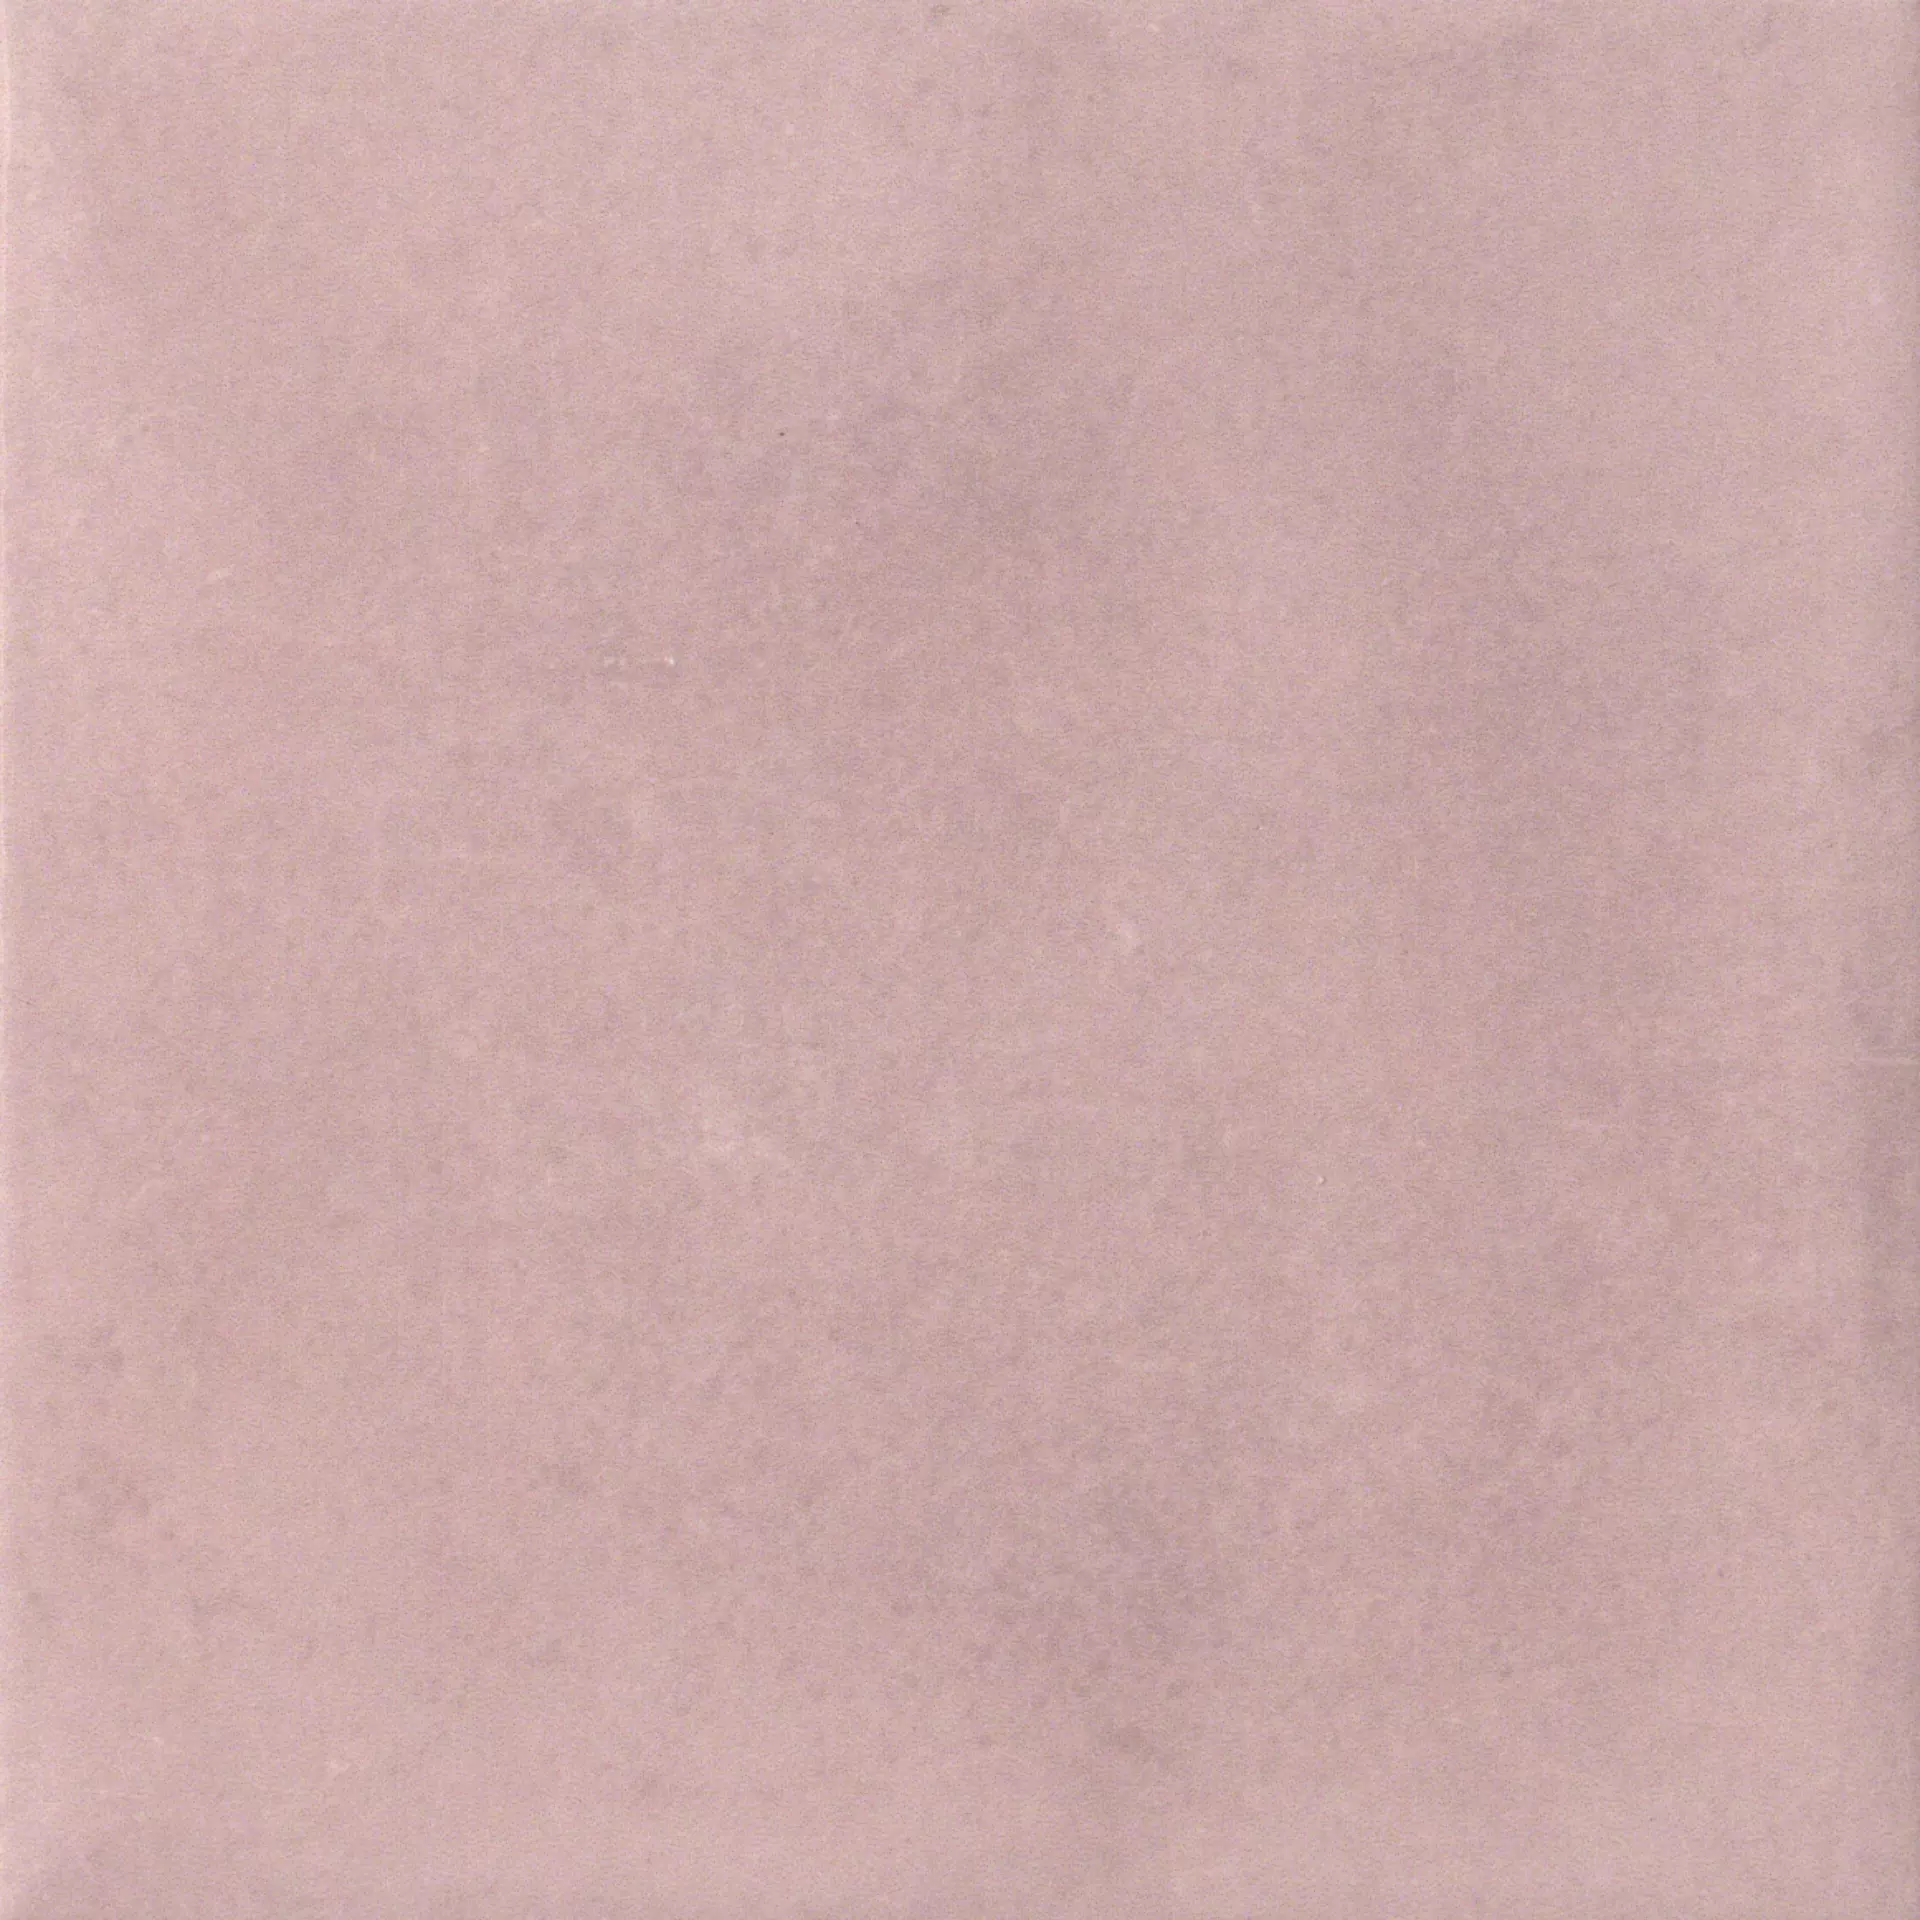 CIR Materia Prima Pink Velvet Naturale 1069775 20x20cm 10mm